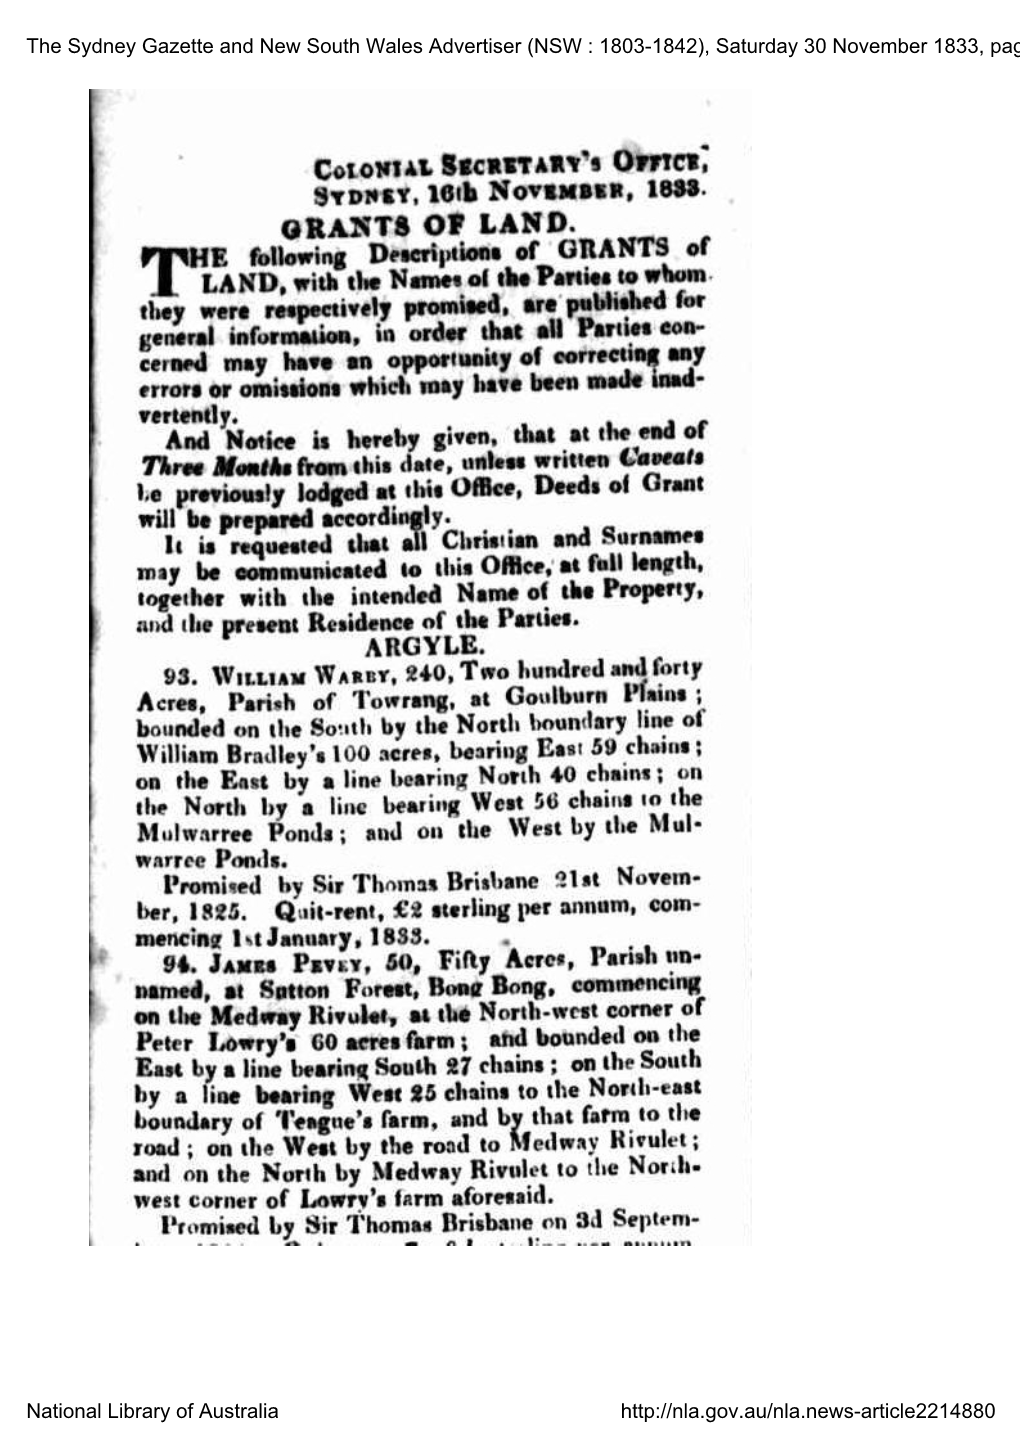 Sydney Gazette, Saturday 30 November 1833, Page 4